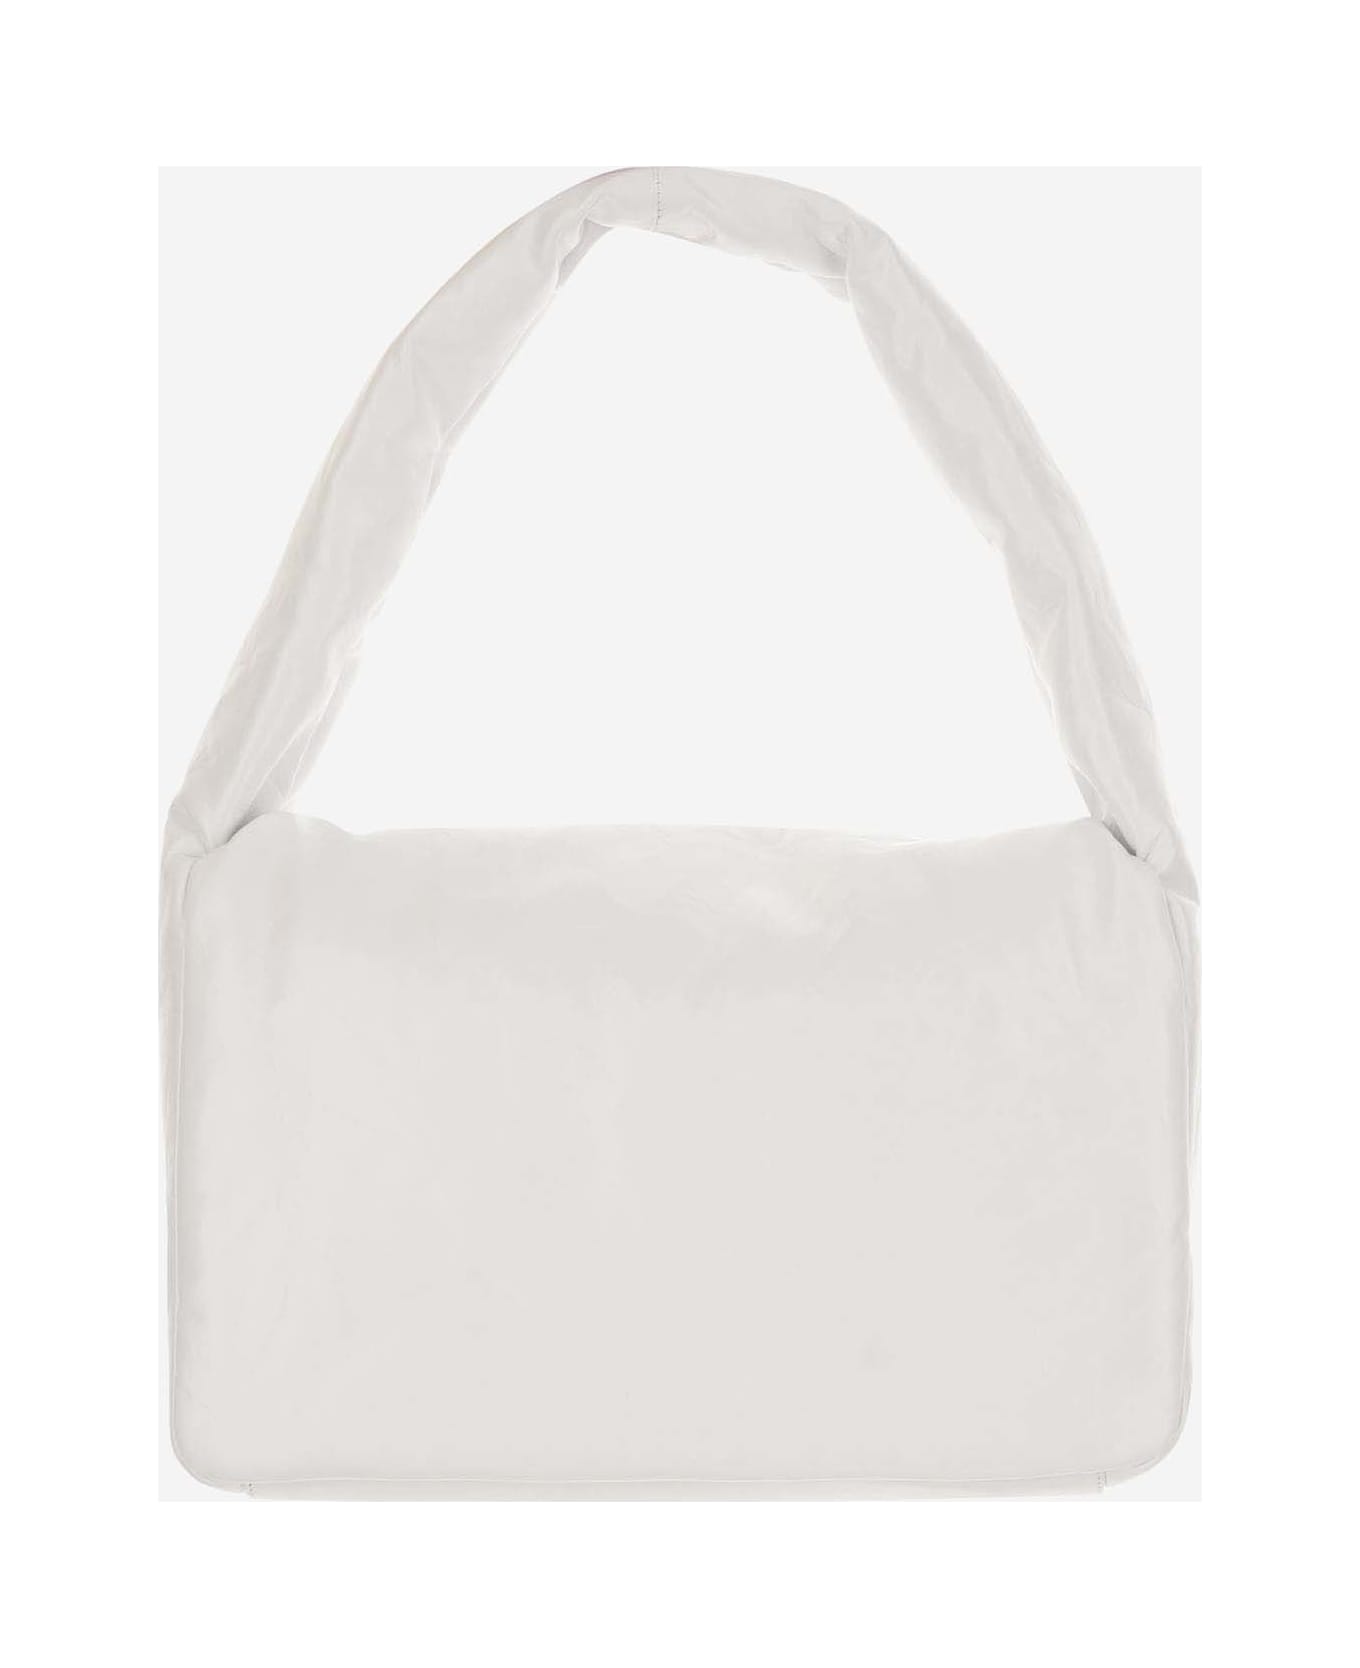 Balenciaga Monaco Medium Sleeve Bag - White